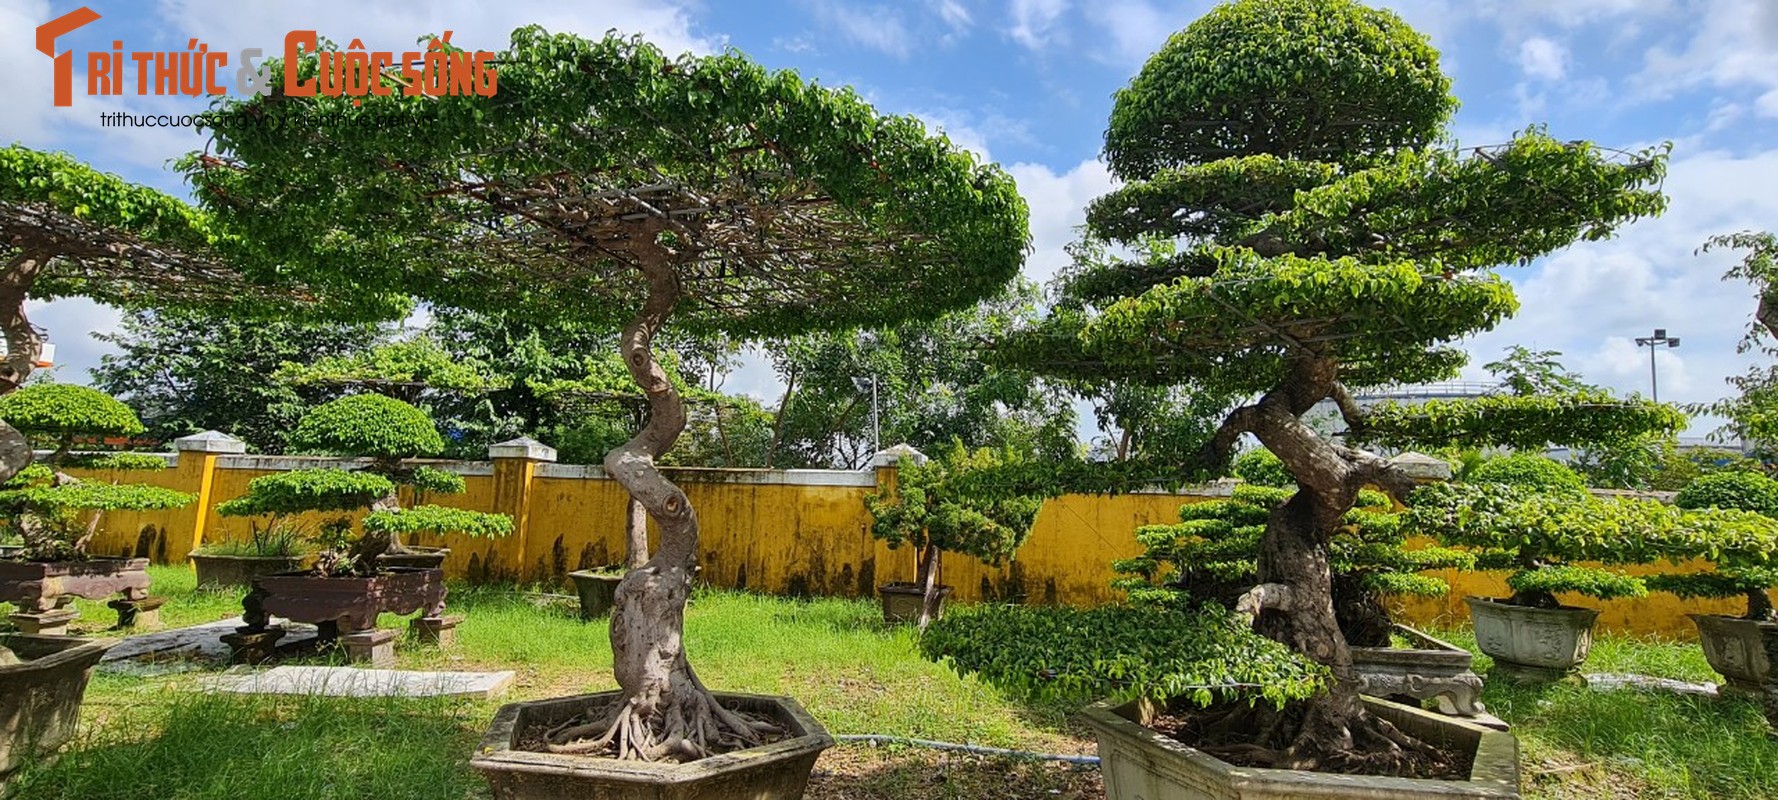 Ngam loat bonsai “phong thuy” trong nhom Tu linh khien nhieu nguoi san lung-Hinh-3